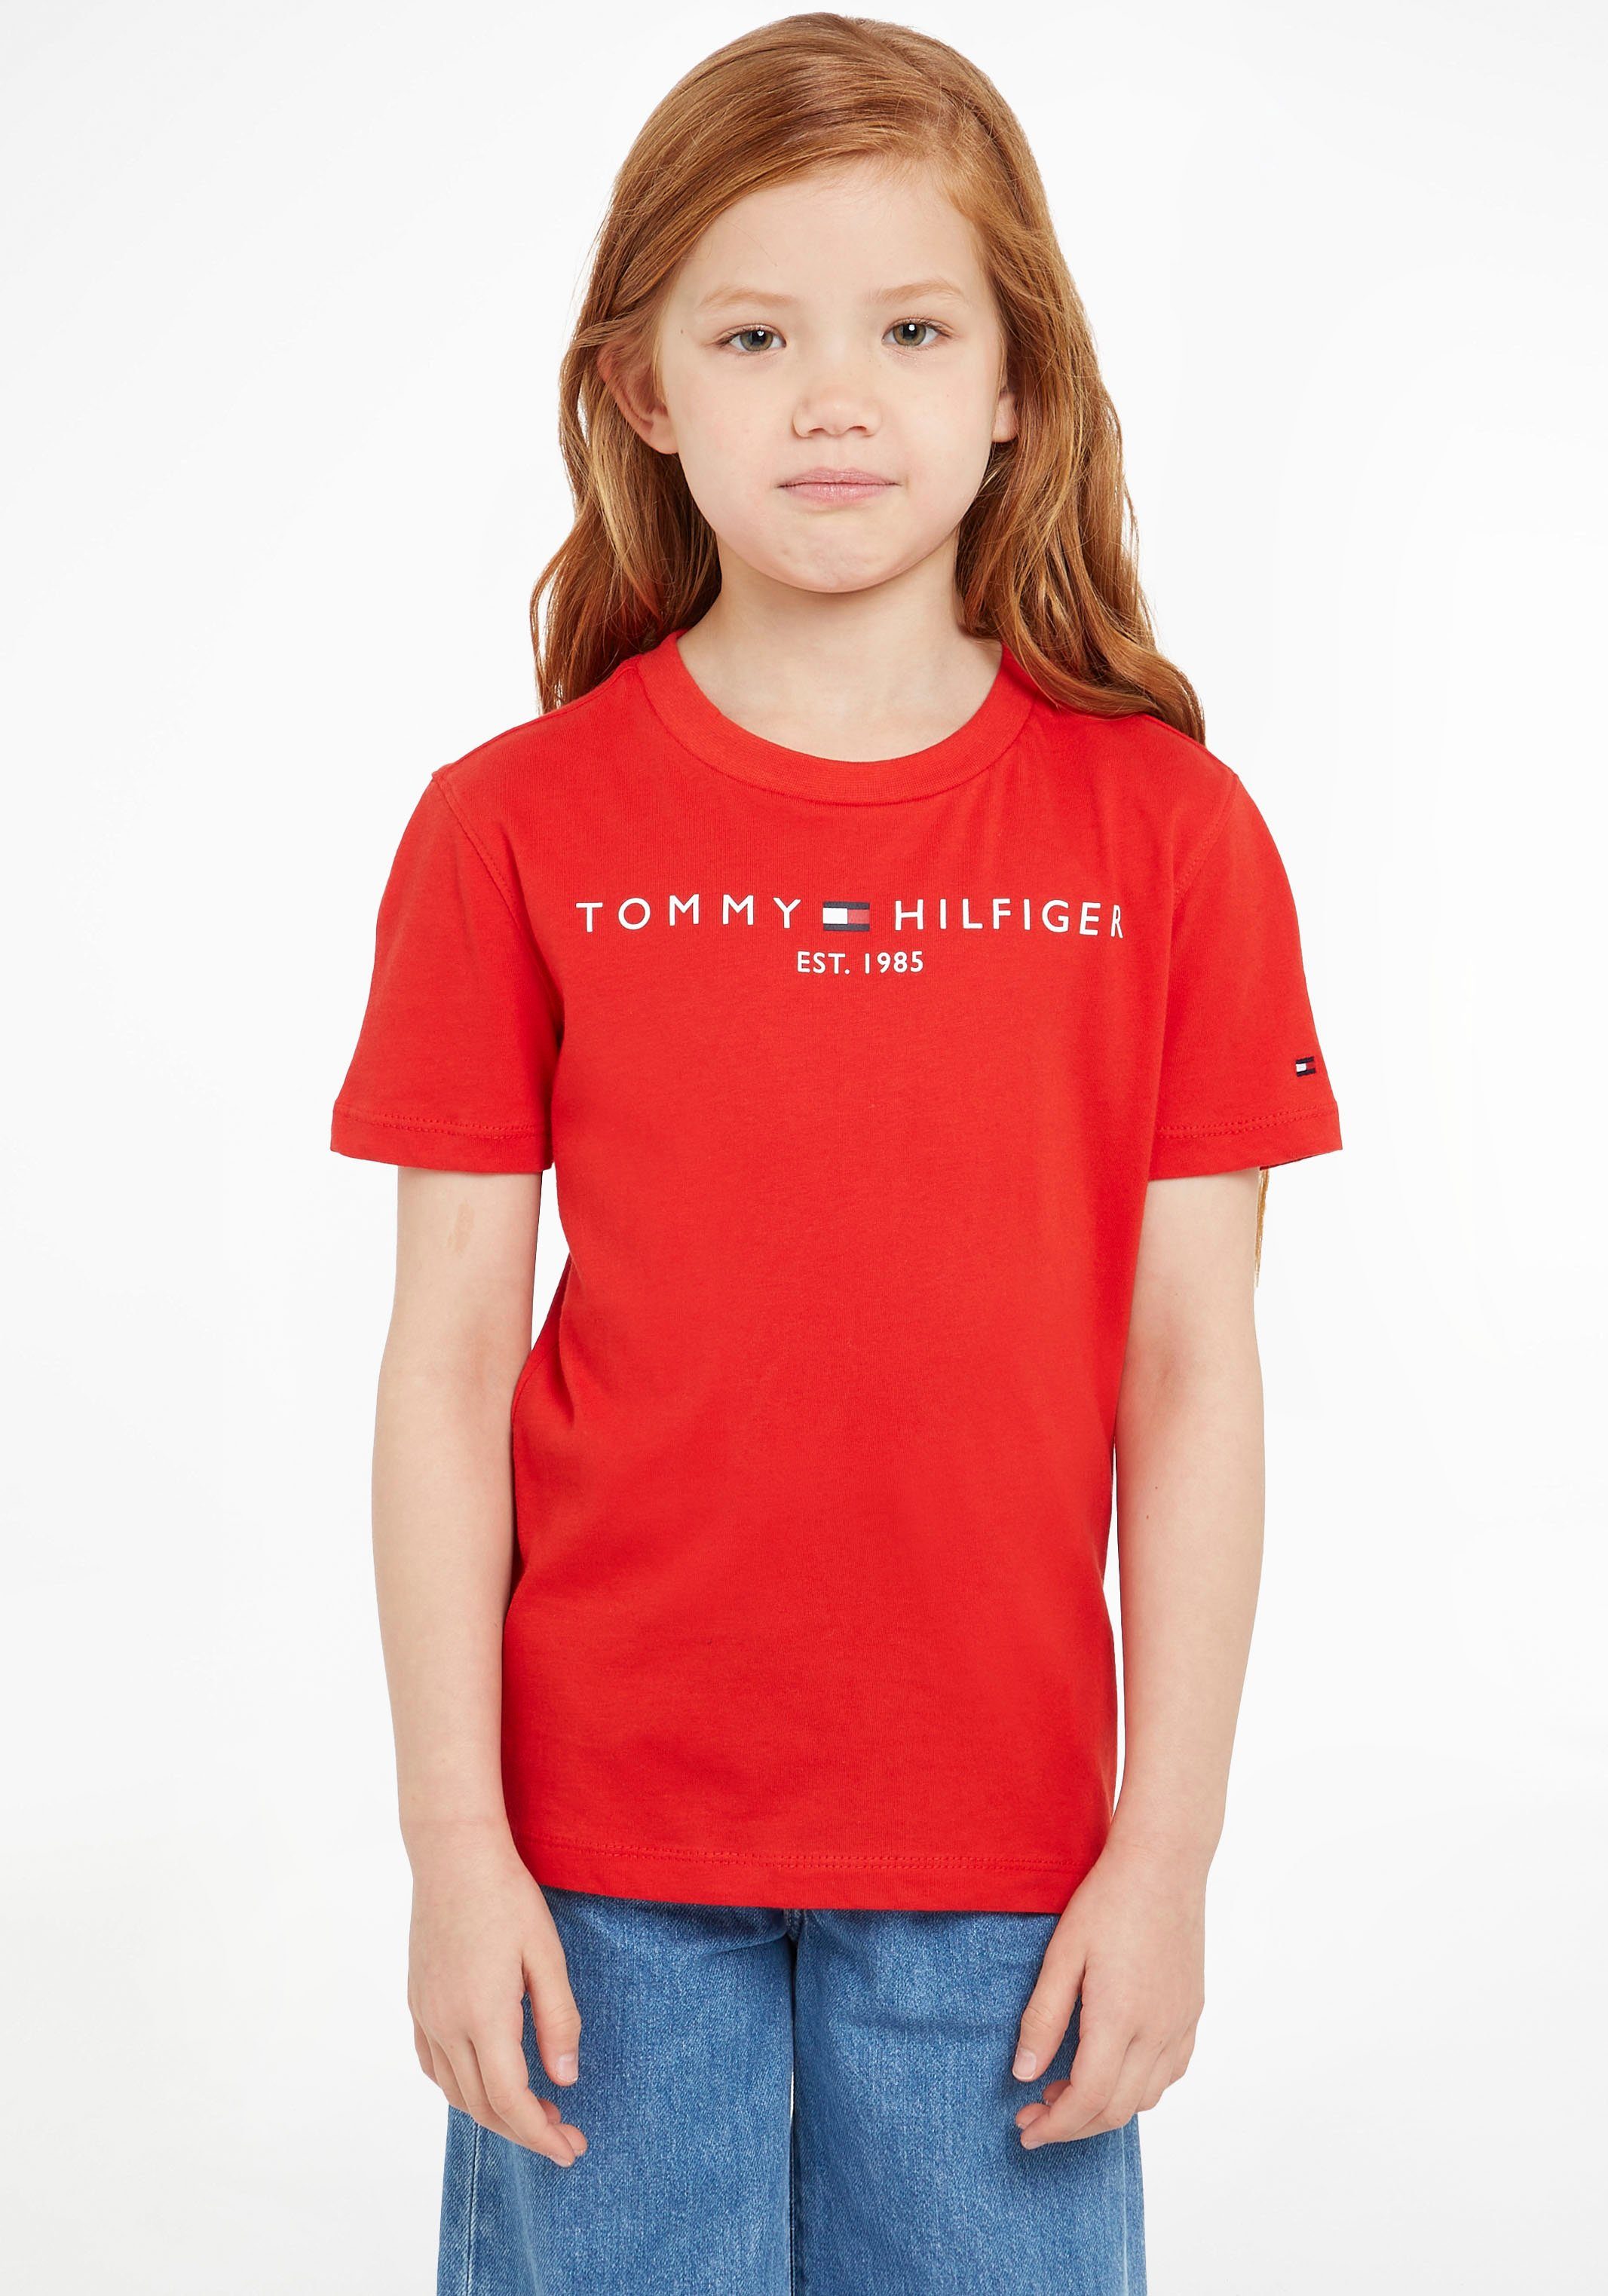 Tommy Hilfiger T-Shirt ESSENTIAL TEE Kinder Kids Junior MiniMe,für Jungen und Mädchen